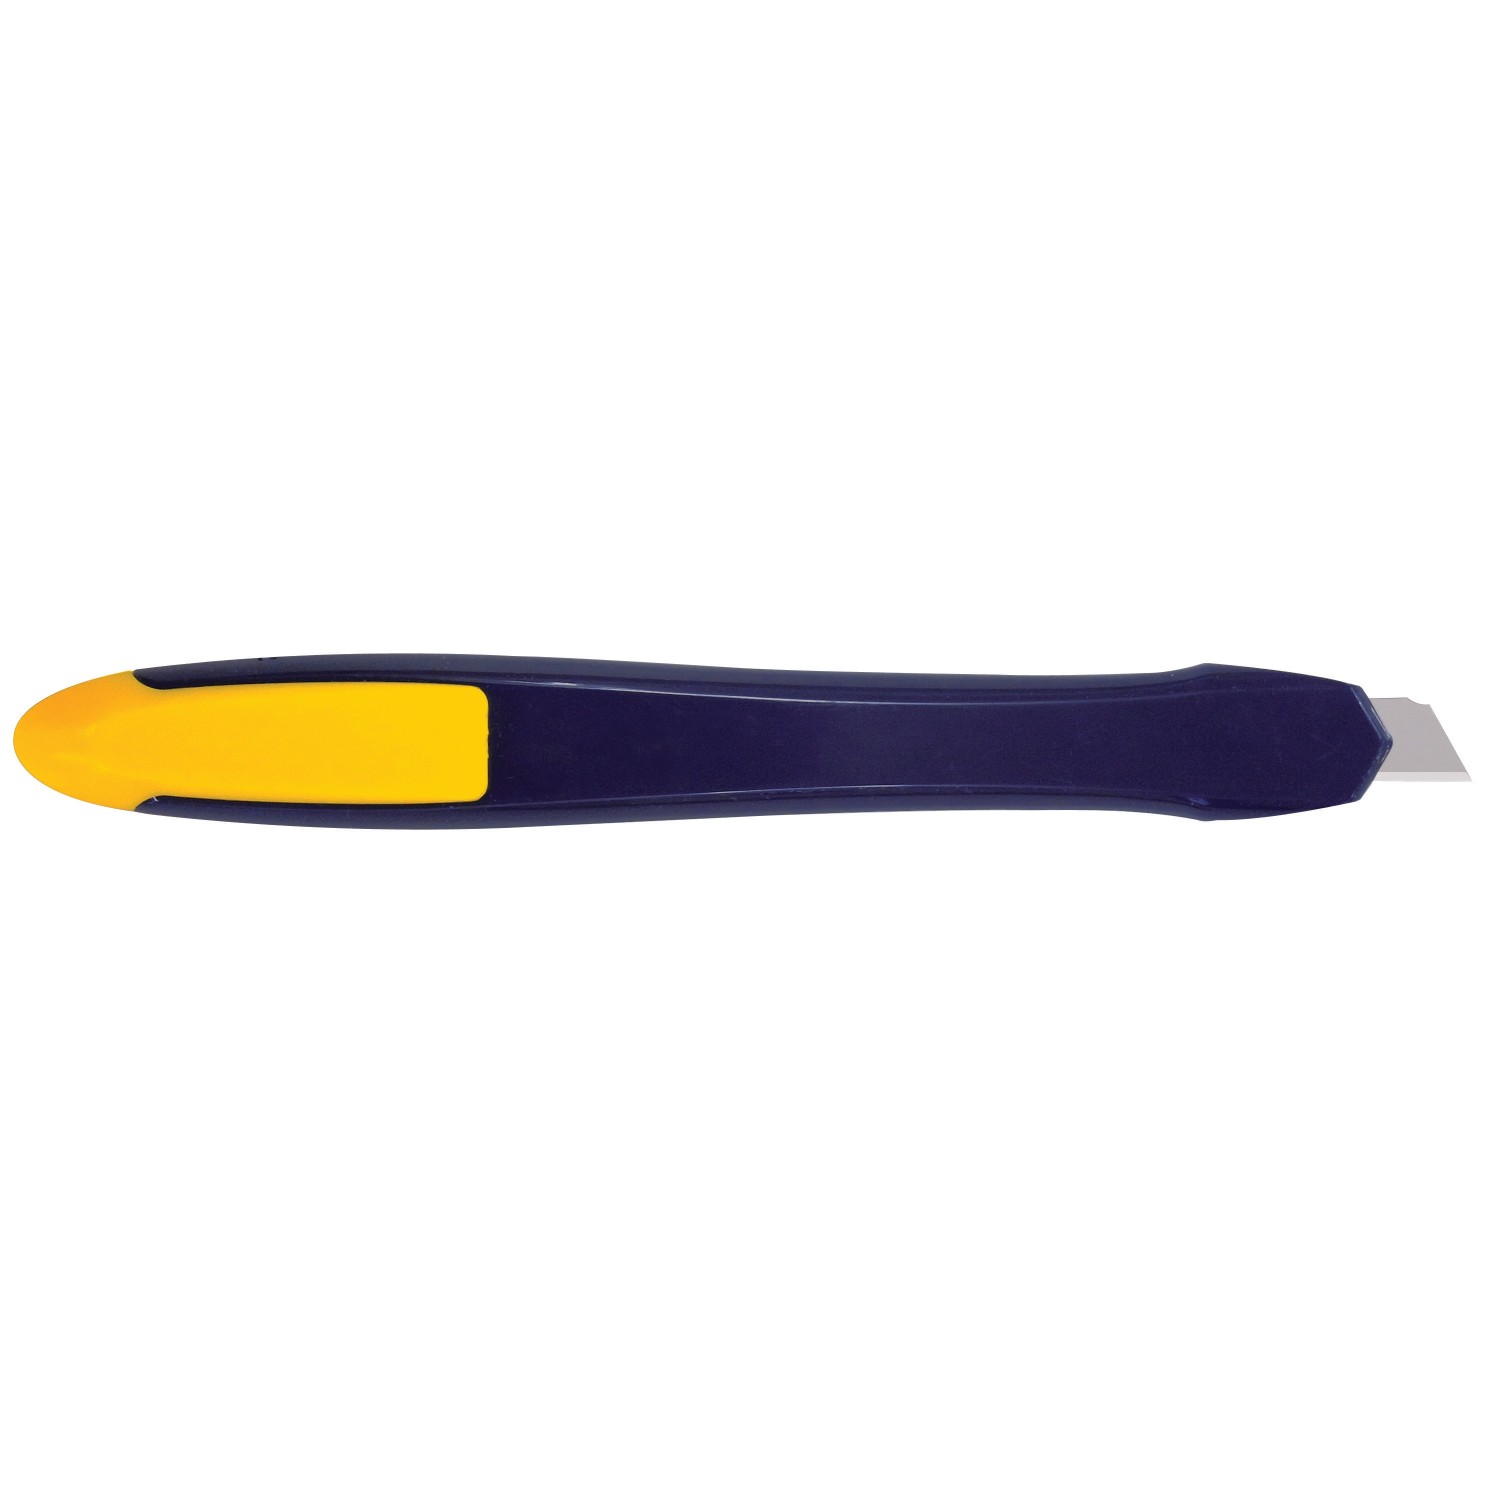 Olfa ES-1 Multi-Purpose Plastic Utility Knife Back